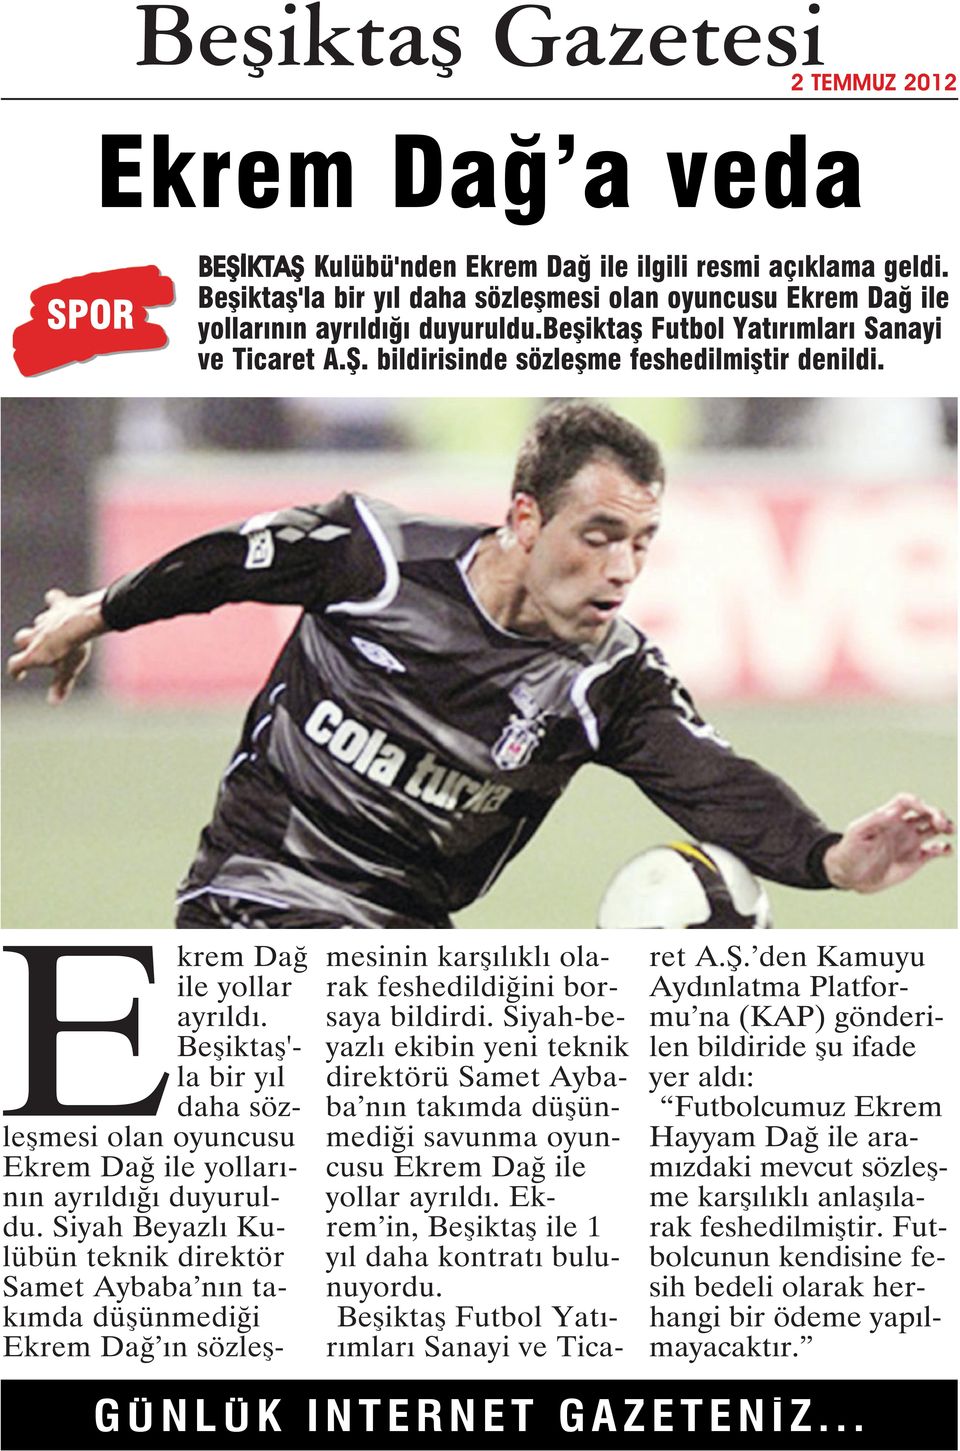 Beşiktaş'- la bir yıl daha sözleşmesi olan oyuncusu Ekrem Dağ ile yollarının ayrıldığı duyuruldu.